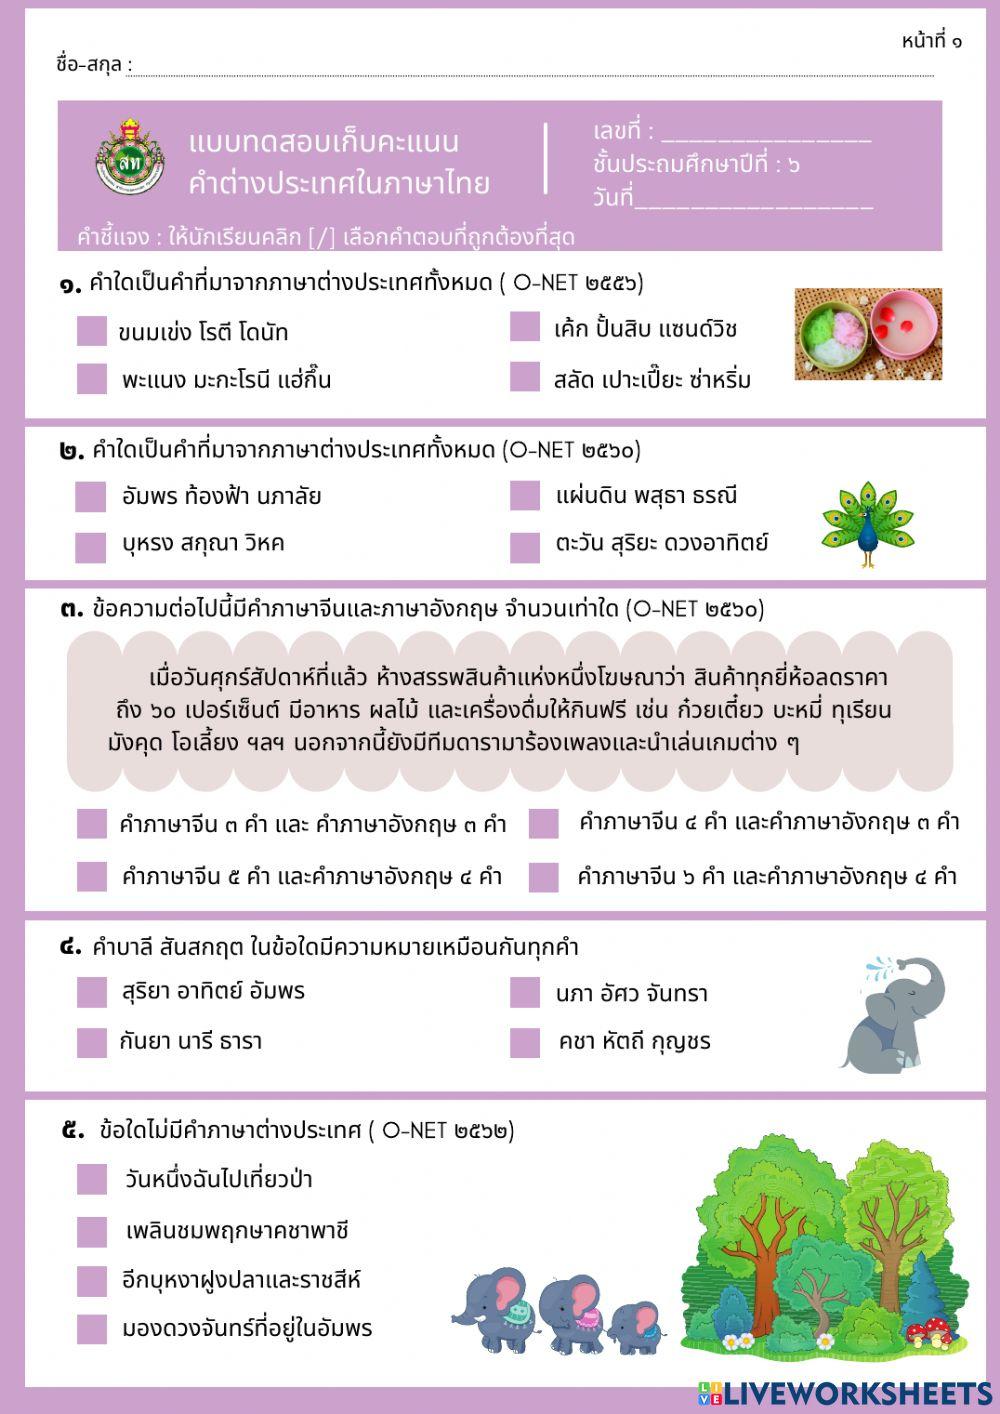 แบบทดสอบเก็บคะแนน คำต่างประเทศในภาษาไทย ป.6